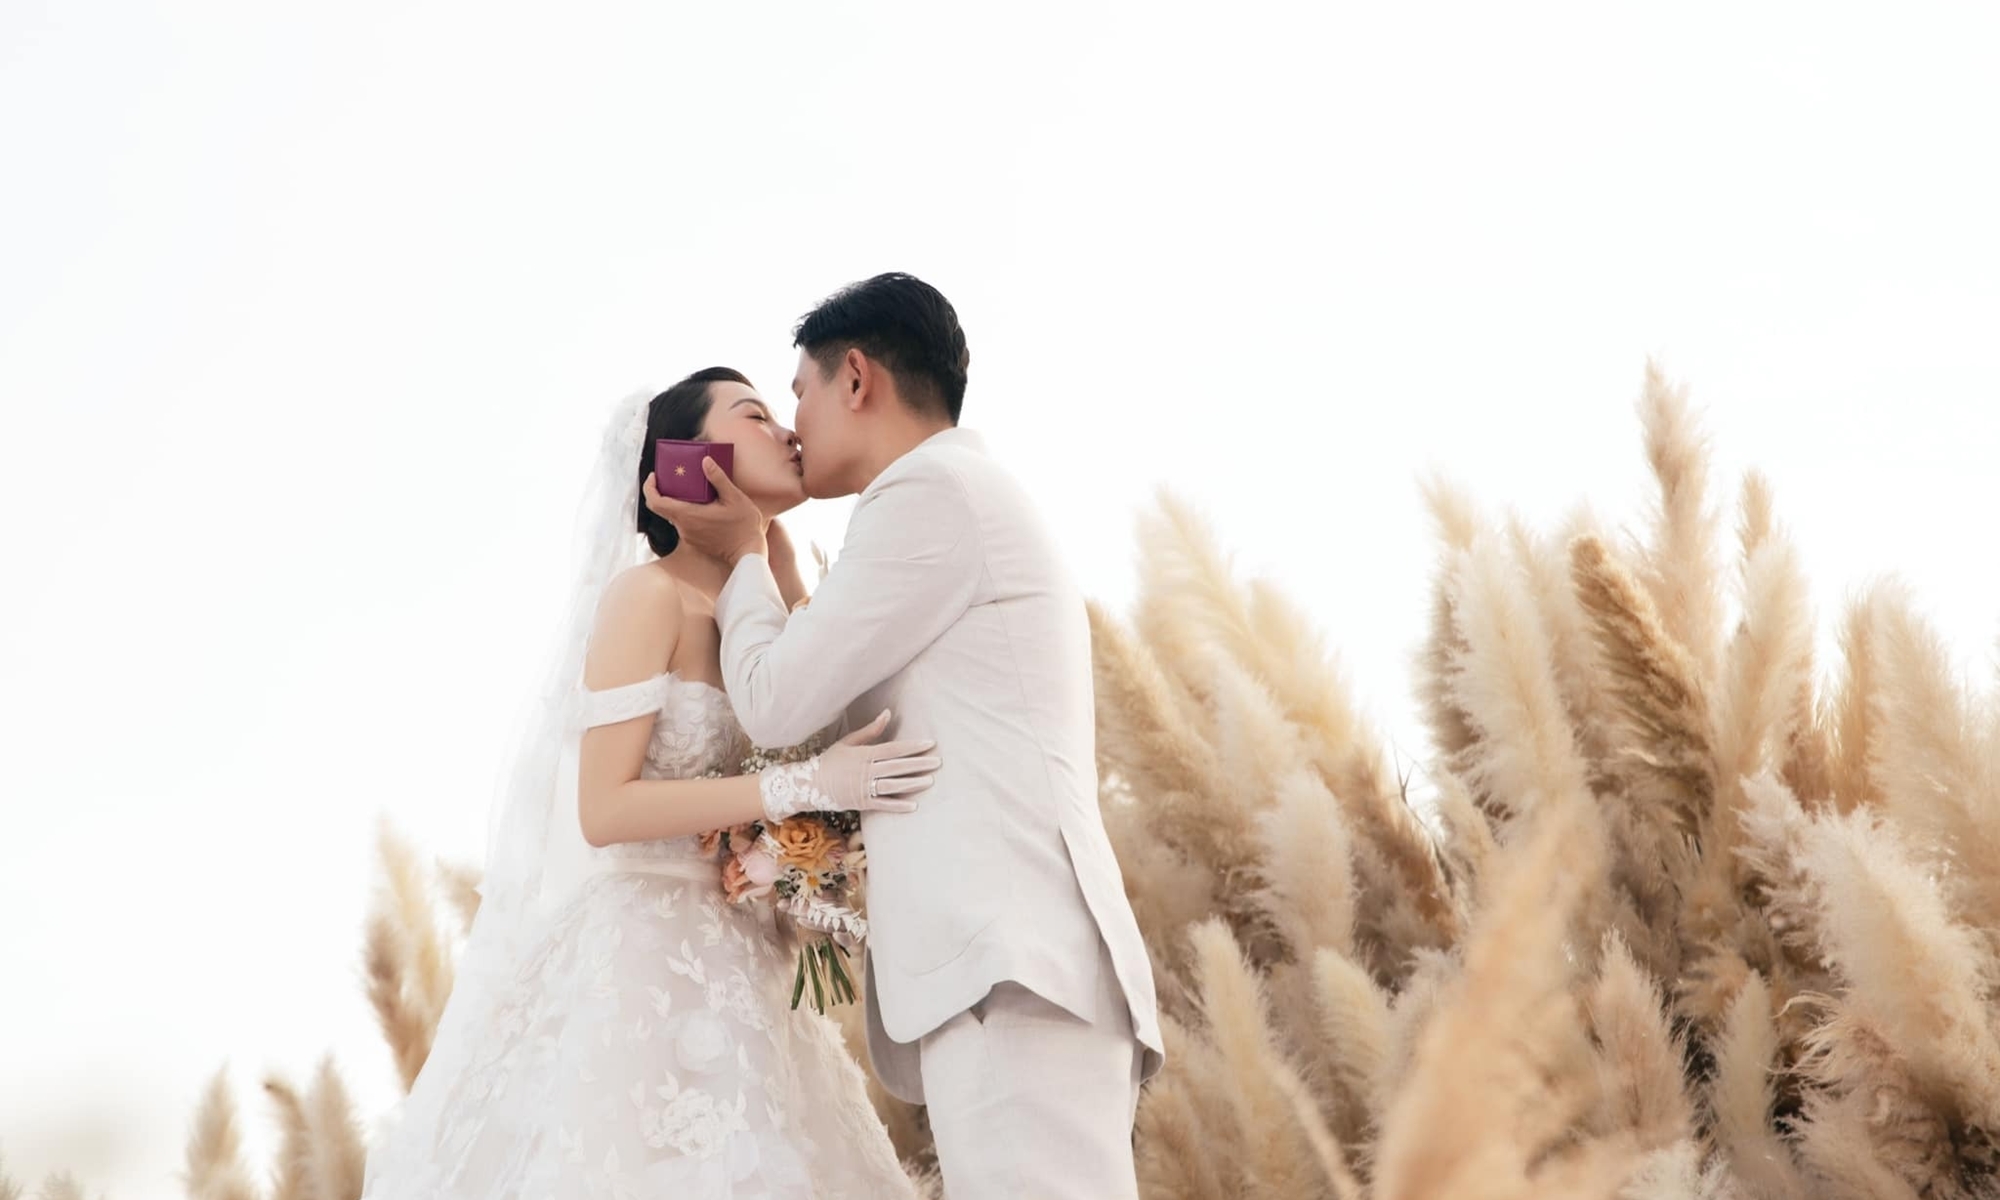 Ca sĩ Minh Hằng và chồng trong hôn lễ vào tháng 6/2022